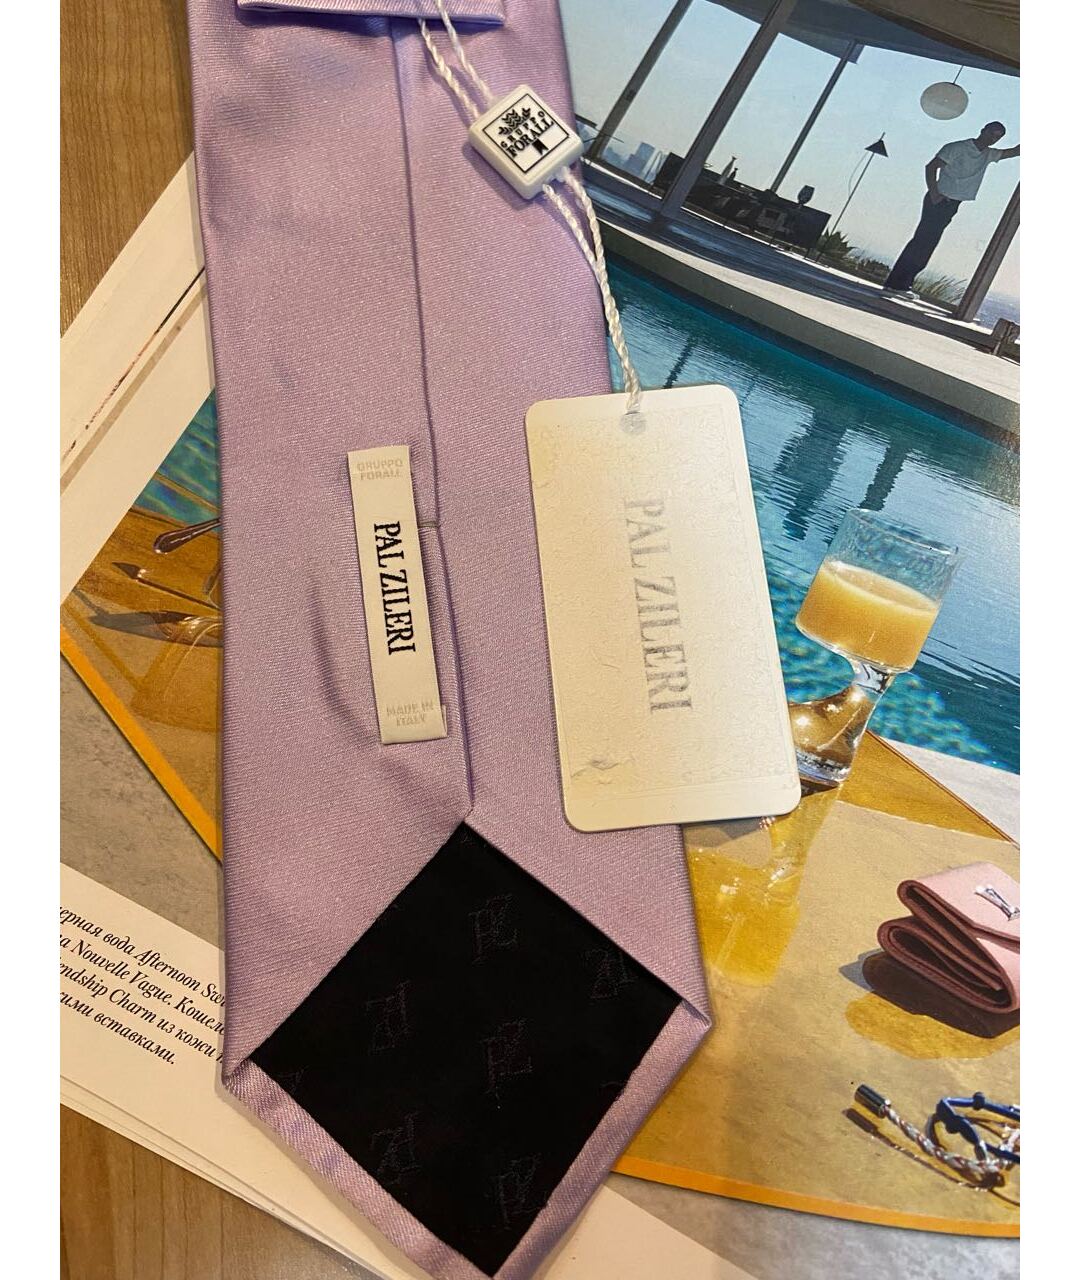 PAL ZILERI Фиолетовый шелковый галстук, фото 3